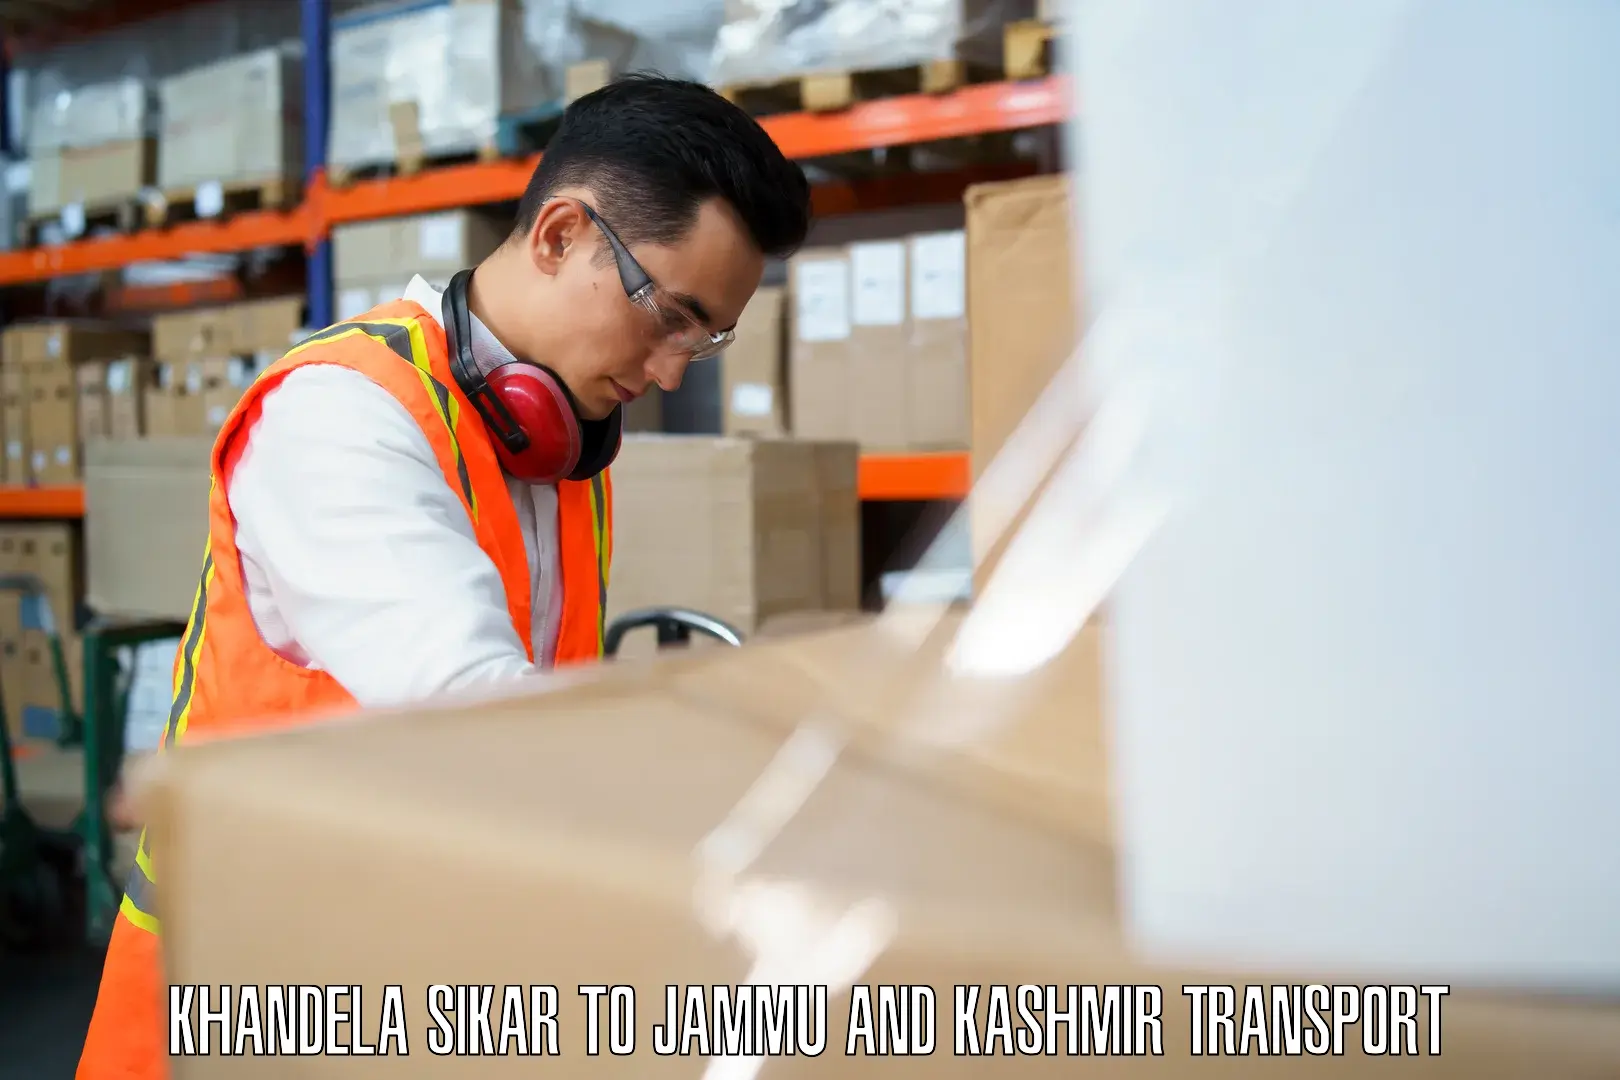 Transport shared services Khandela Sikar to Jammu and Kashmir